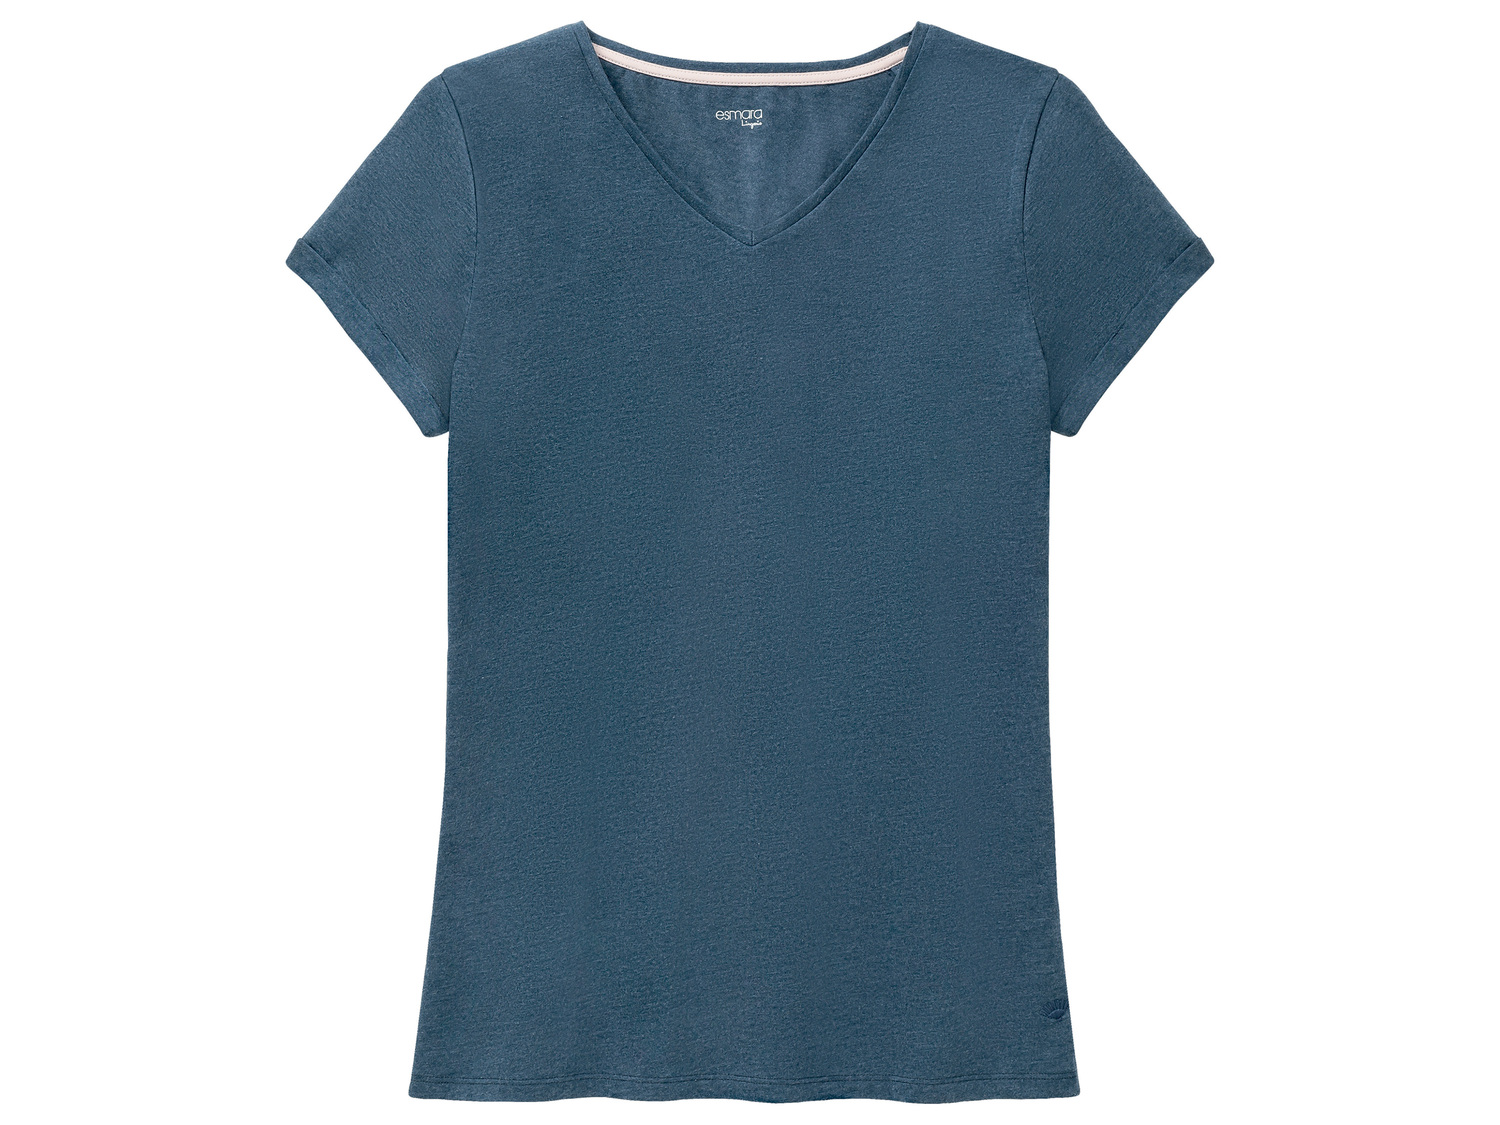 T-shirt de nuit , le prix 3.99 € 
- Du S au XL selon modèle.
- Ex. 60 % coton ...